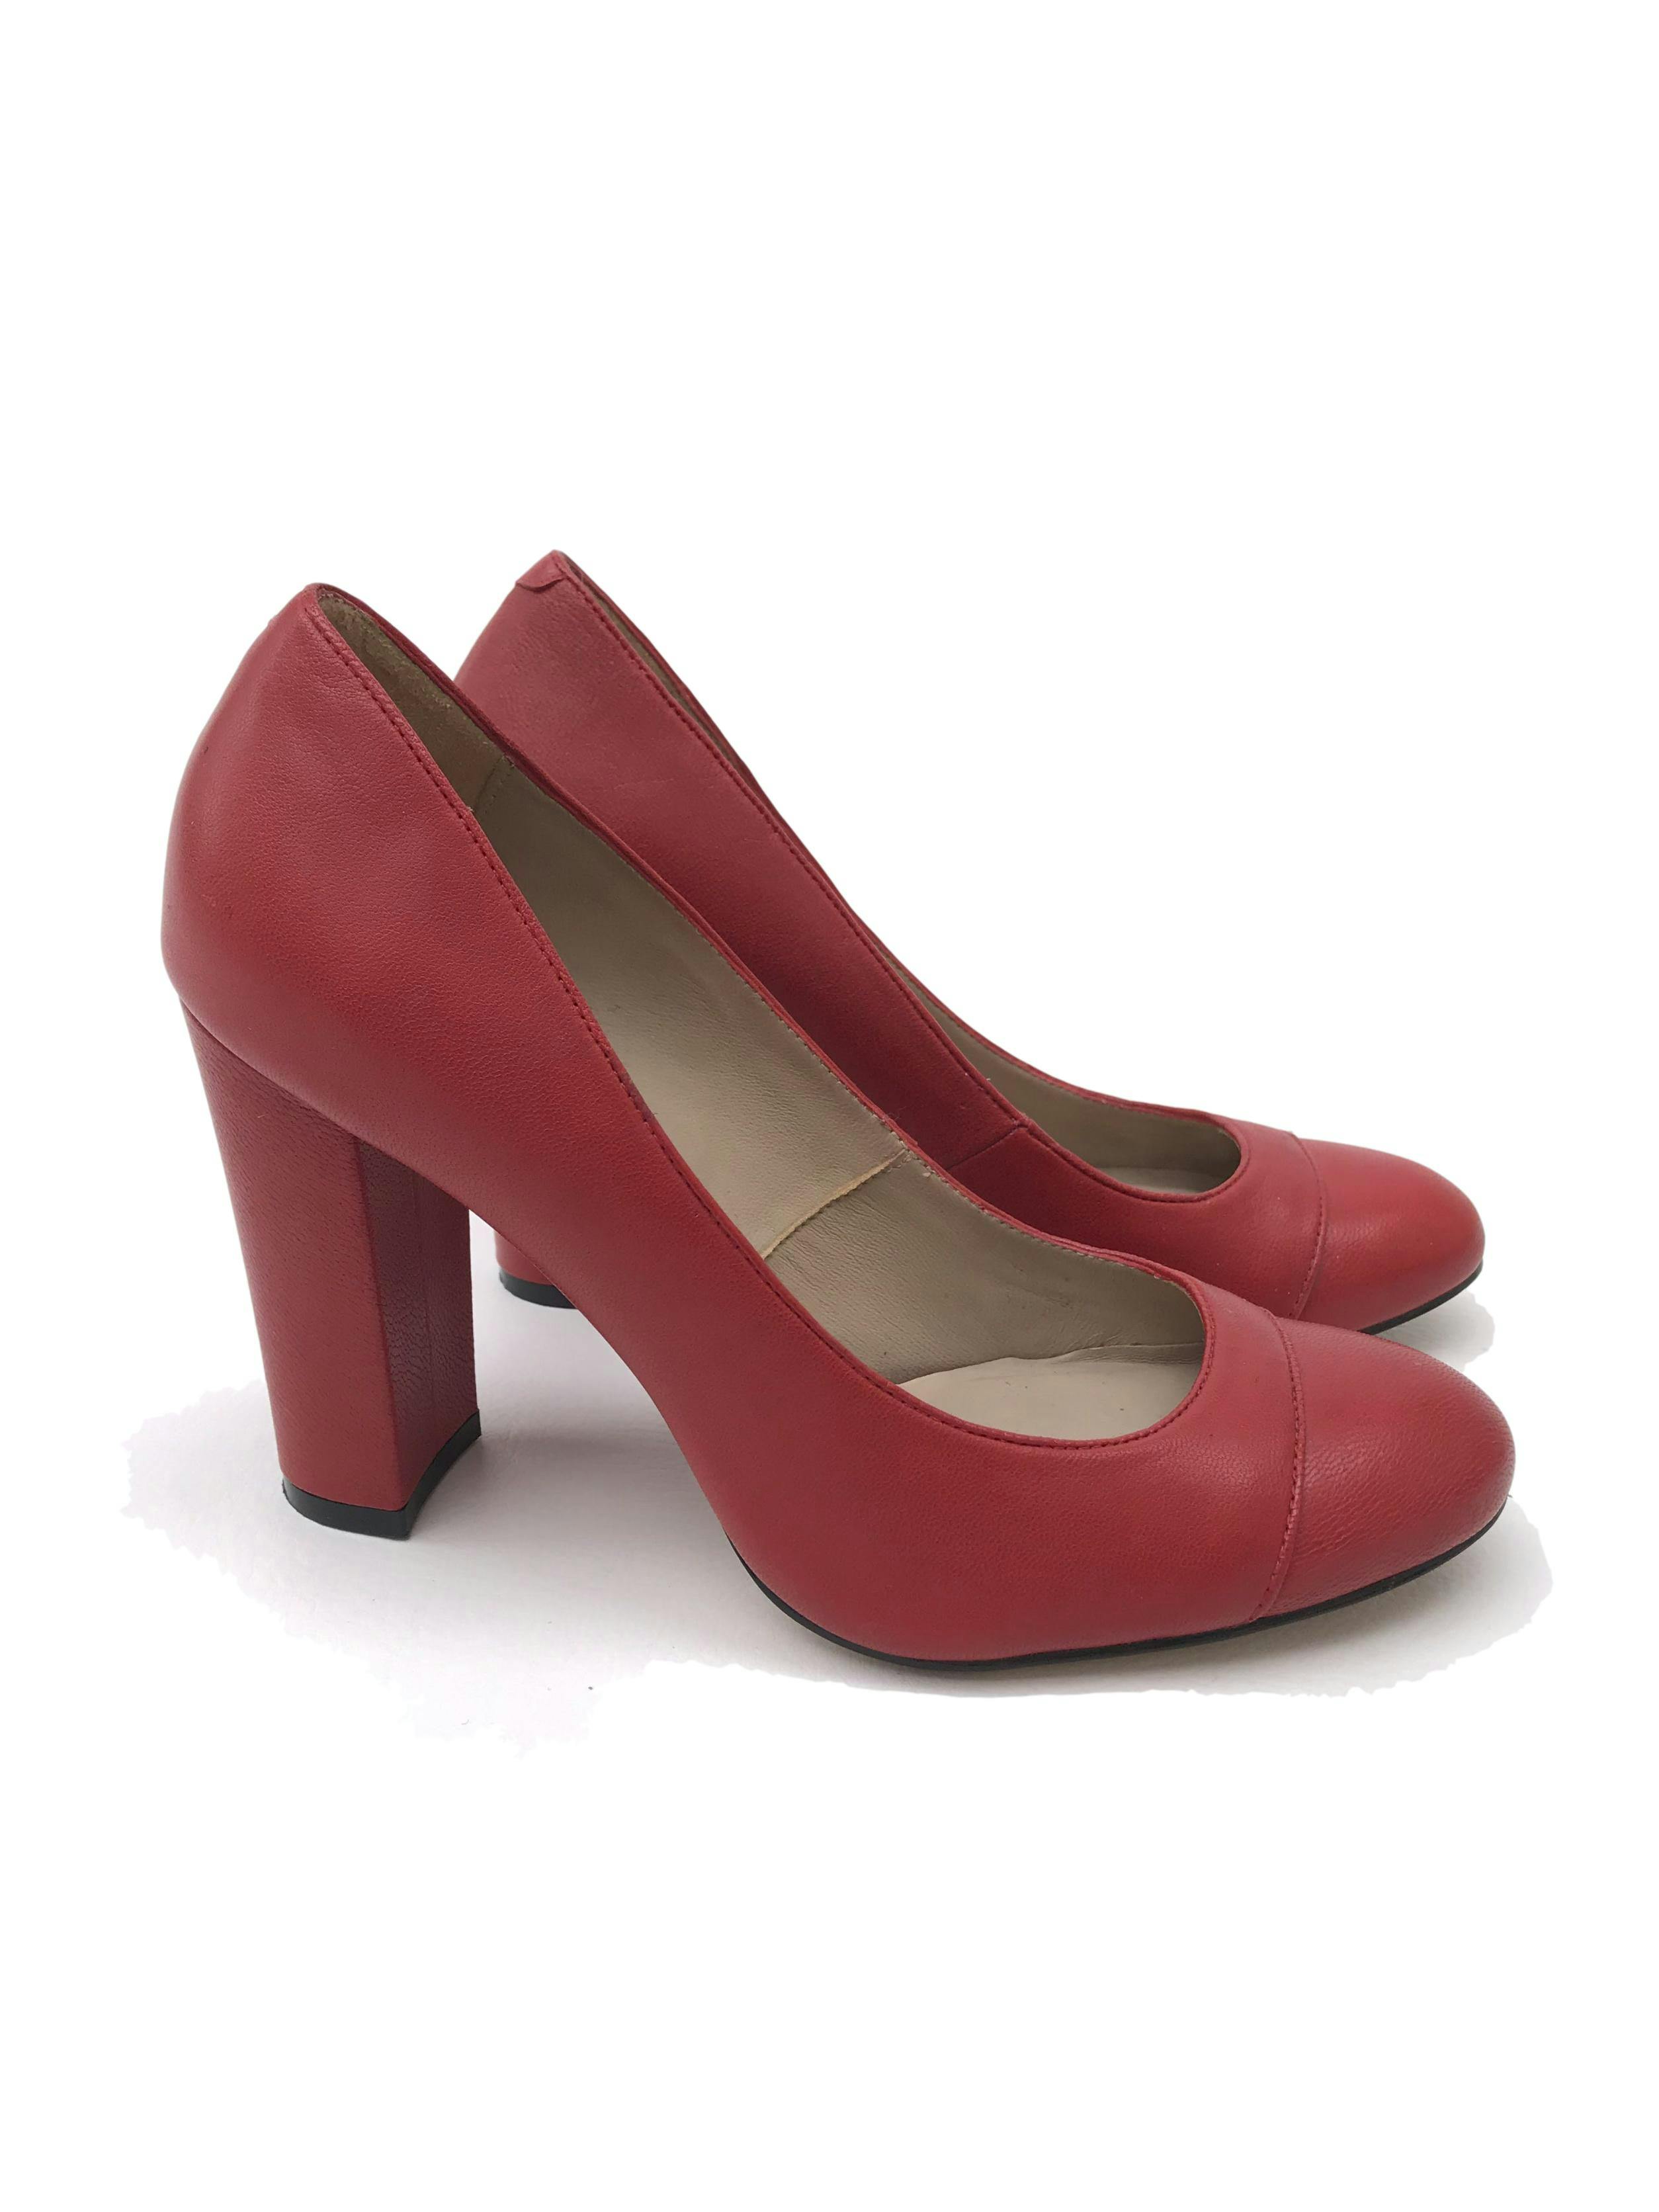 Zapatos Ecco rojos de cuero, taco ancho 9cm. Estado 9/10. Precio original S/ 230